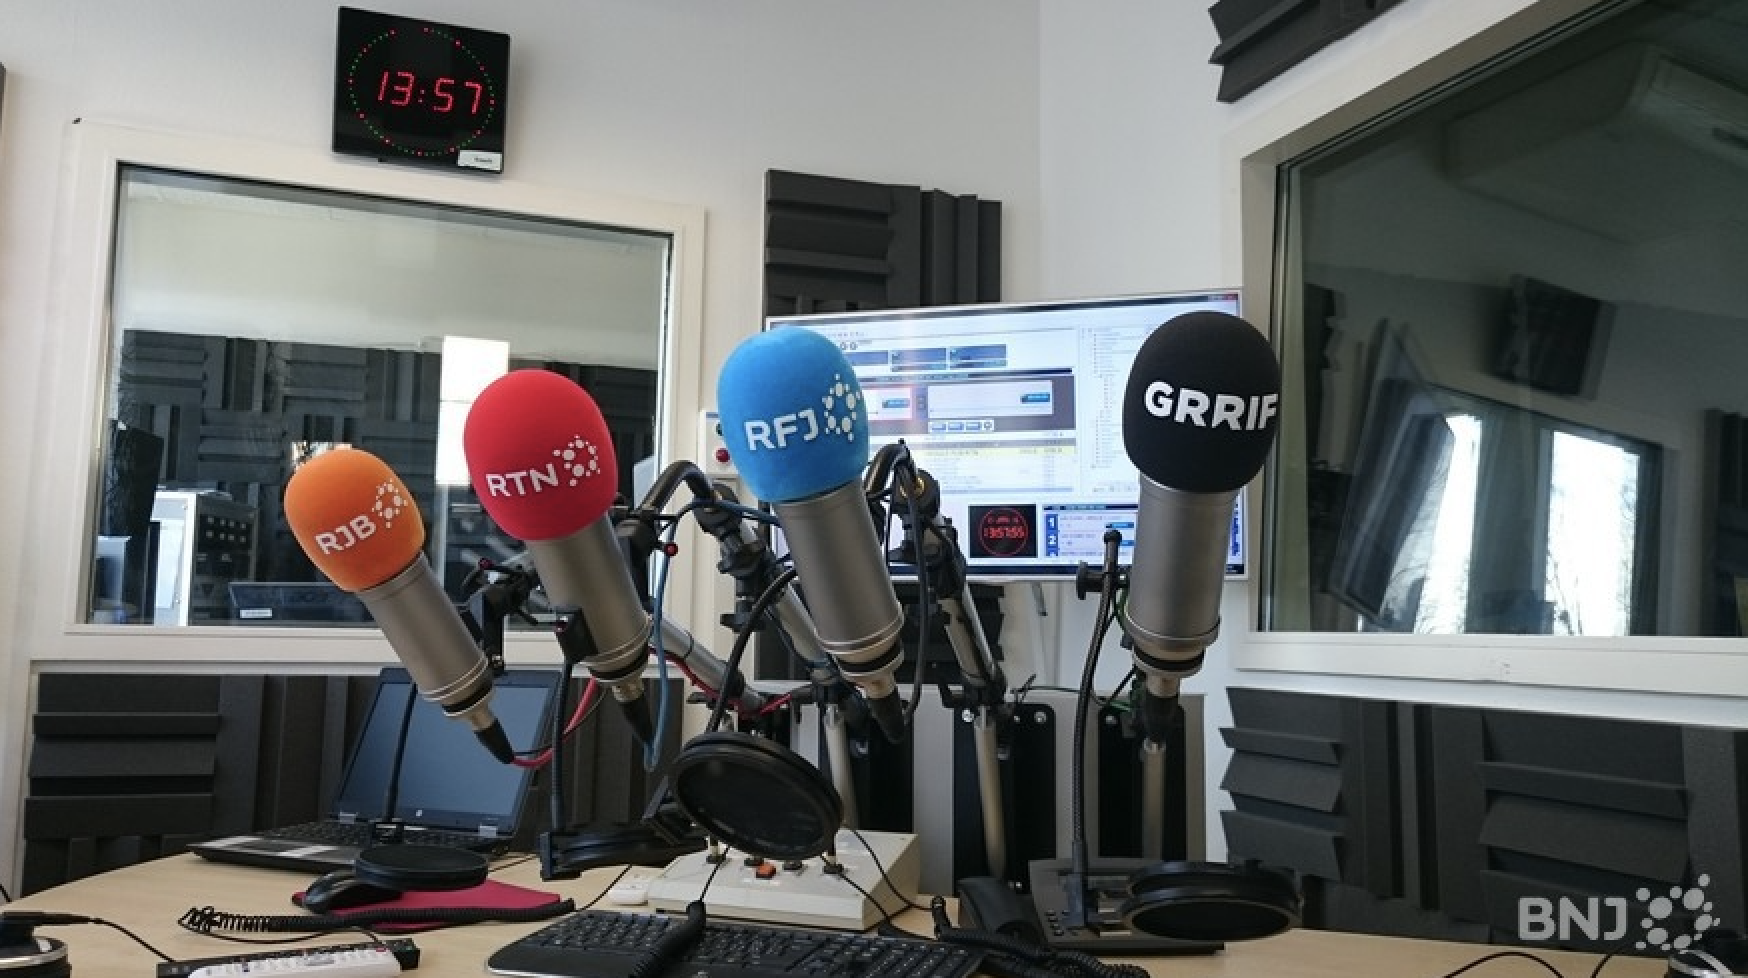 BNJ FM a choisi StudioTalk pour alimenter sa plate-forme de radio visuelle